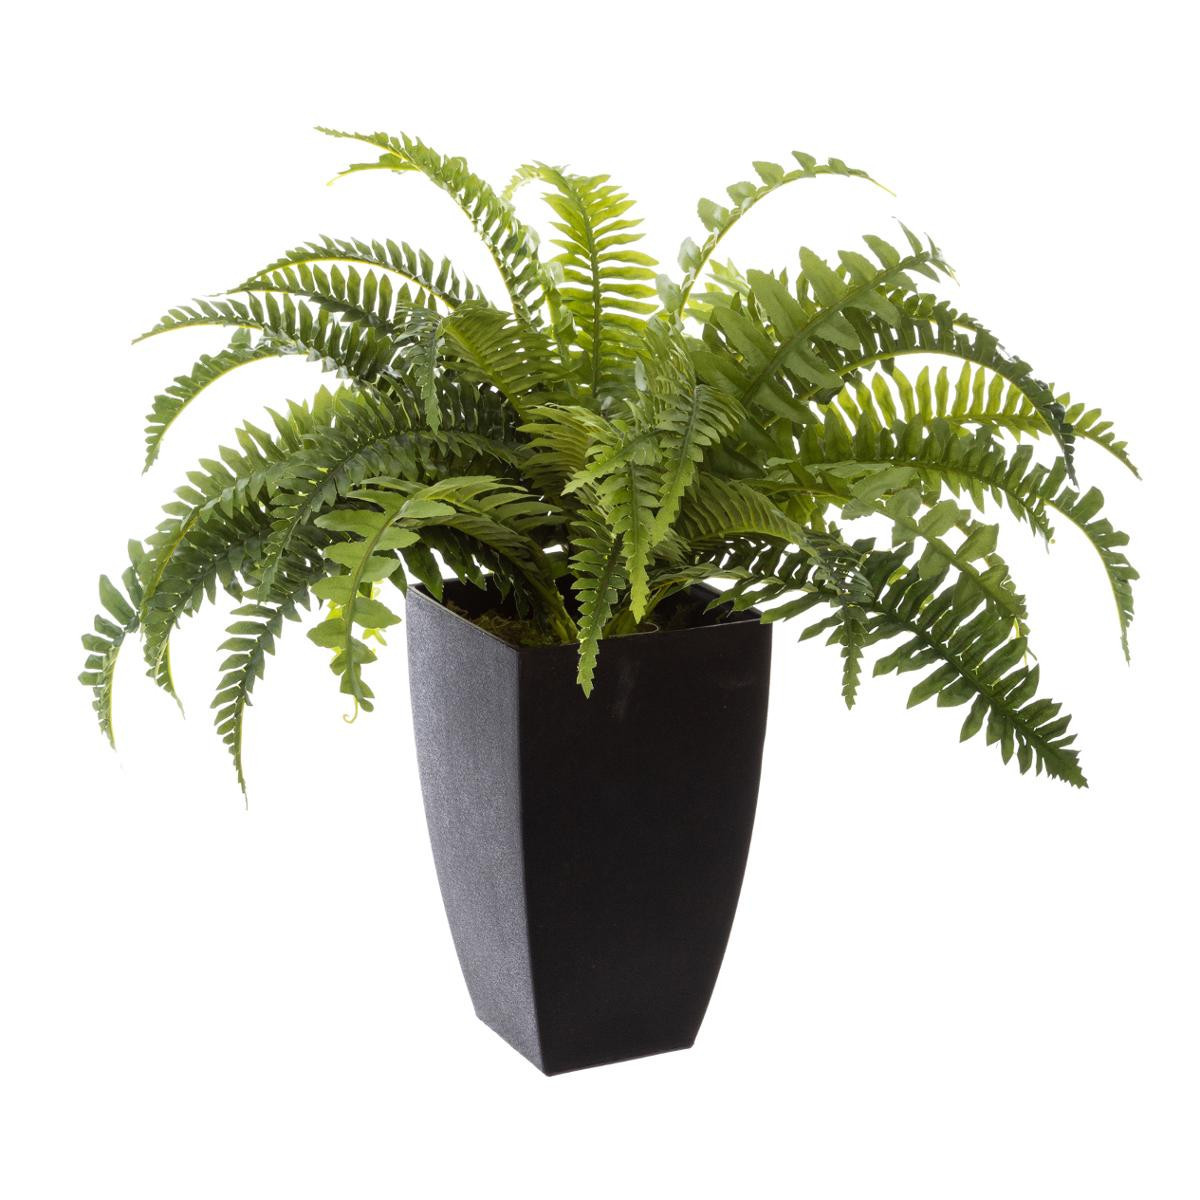 Fausse plante Aloe Vera 45 cm : plante artificielle Aloe Vera – INSIDE Box  - Shop - Conseil